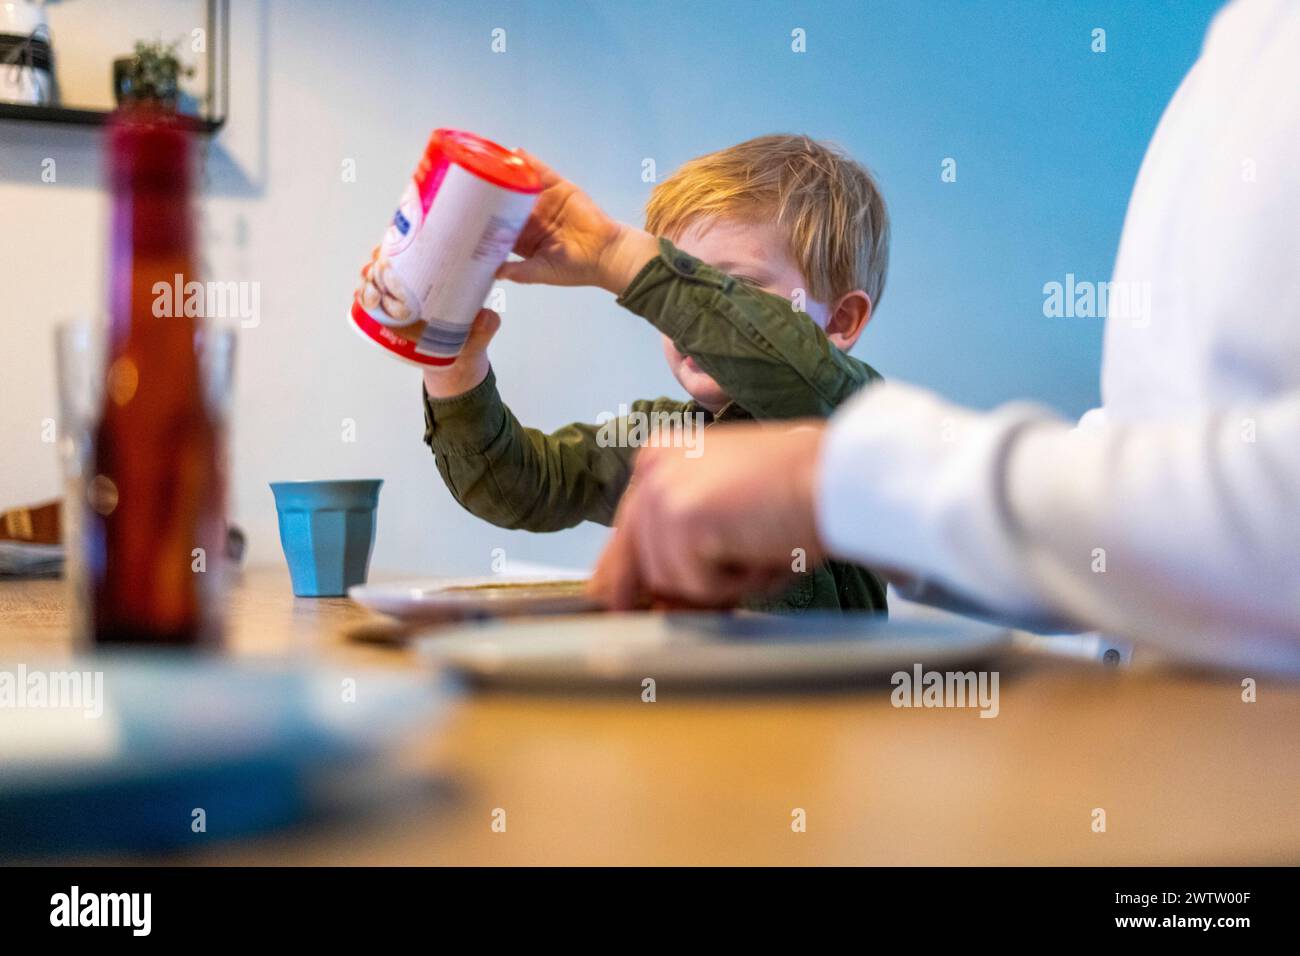 Ein neugieriges Kind, das versucht, Ketchup während eines Familienessens auf den Teller zu gießen. Stockfoto